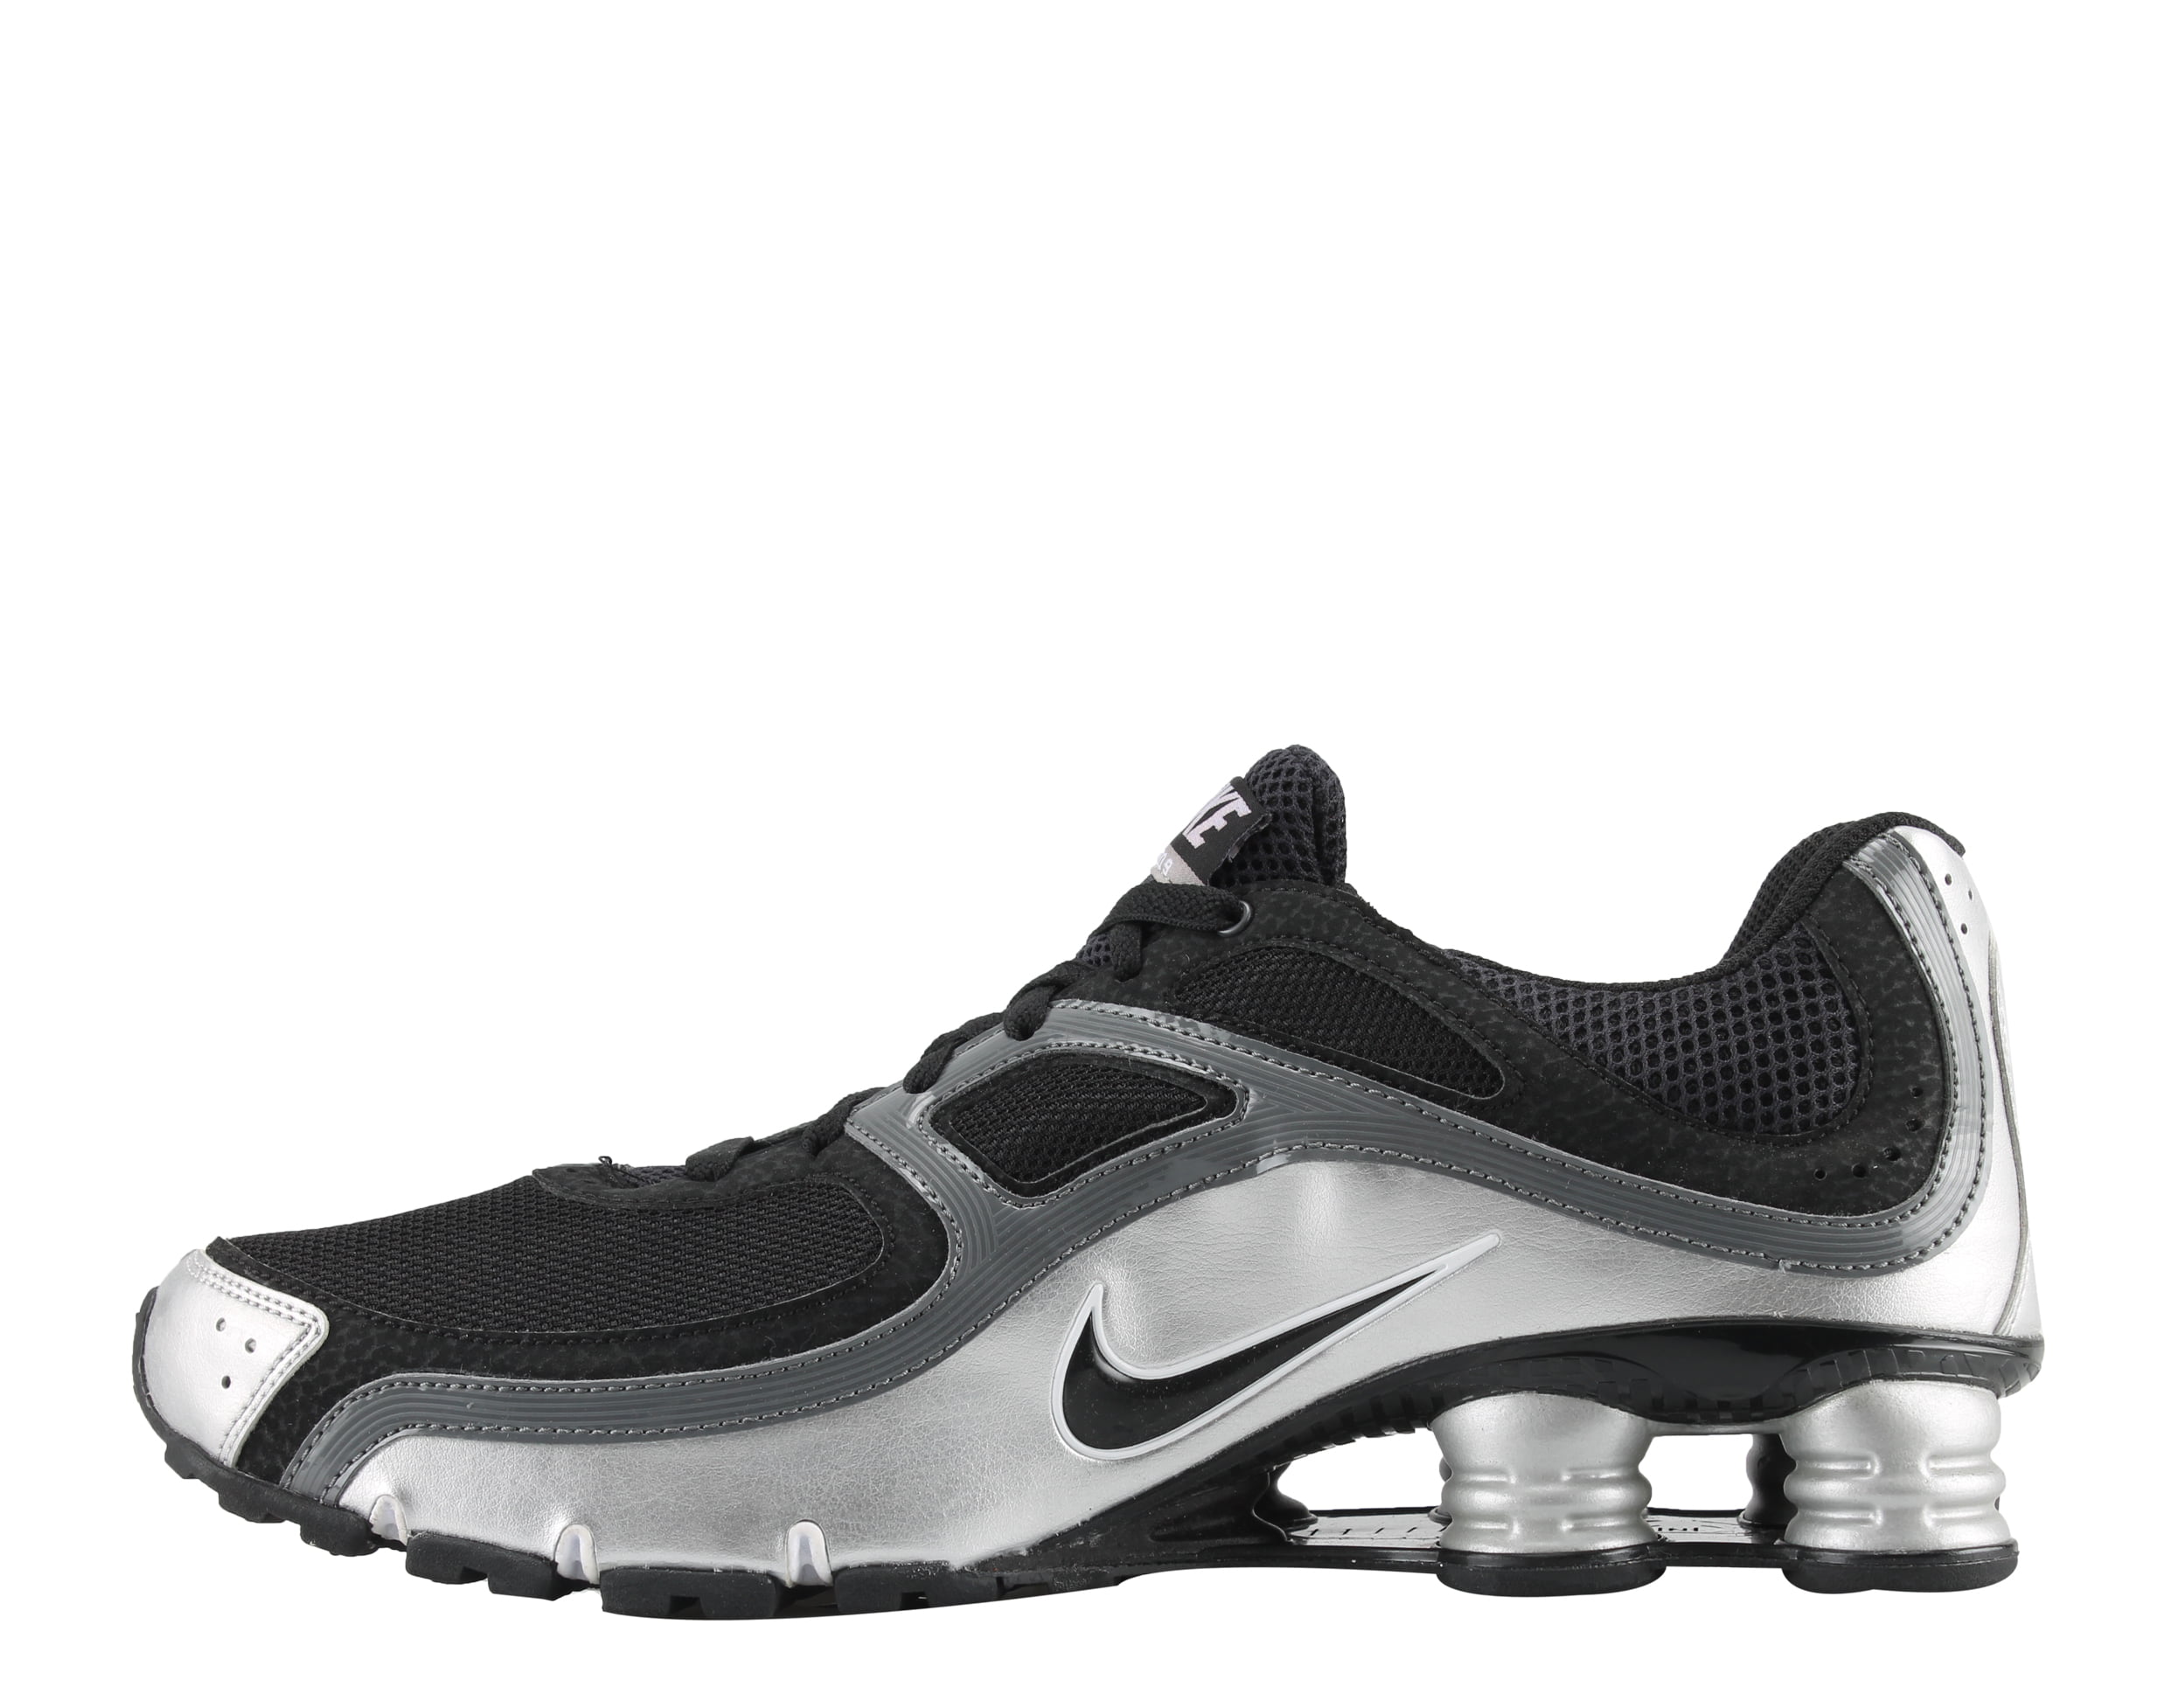 Nike Shox 9+ Men's Running Shoes Size 10.5 - Walmart.com